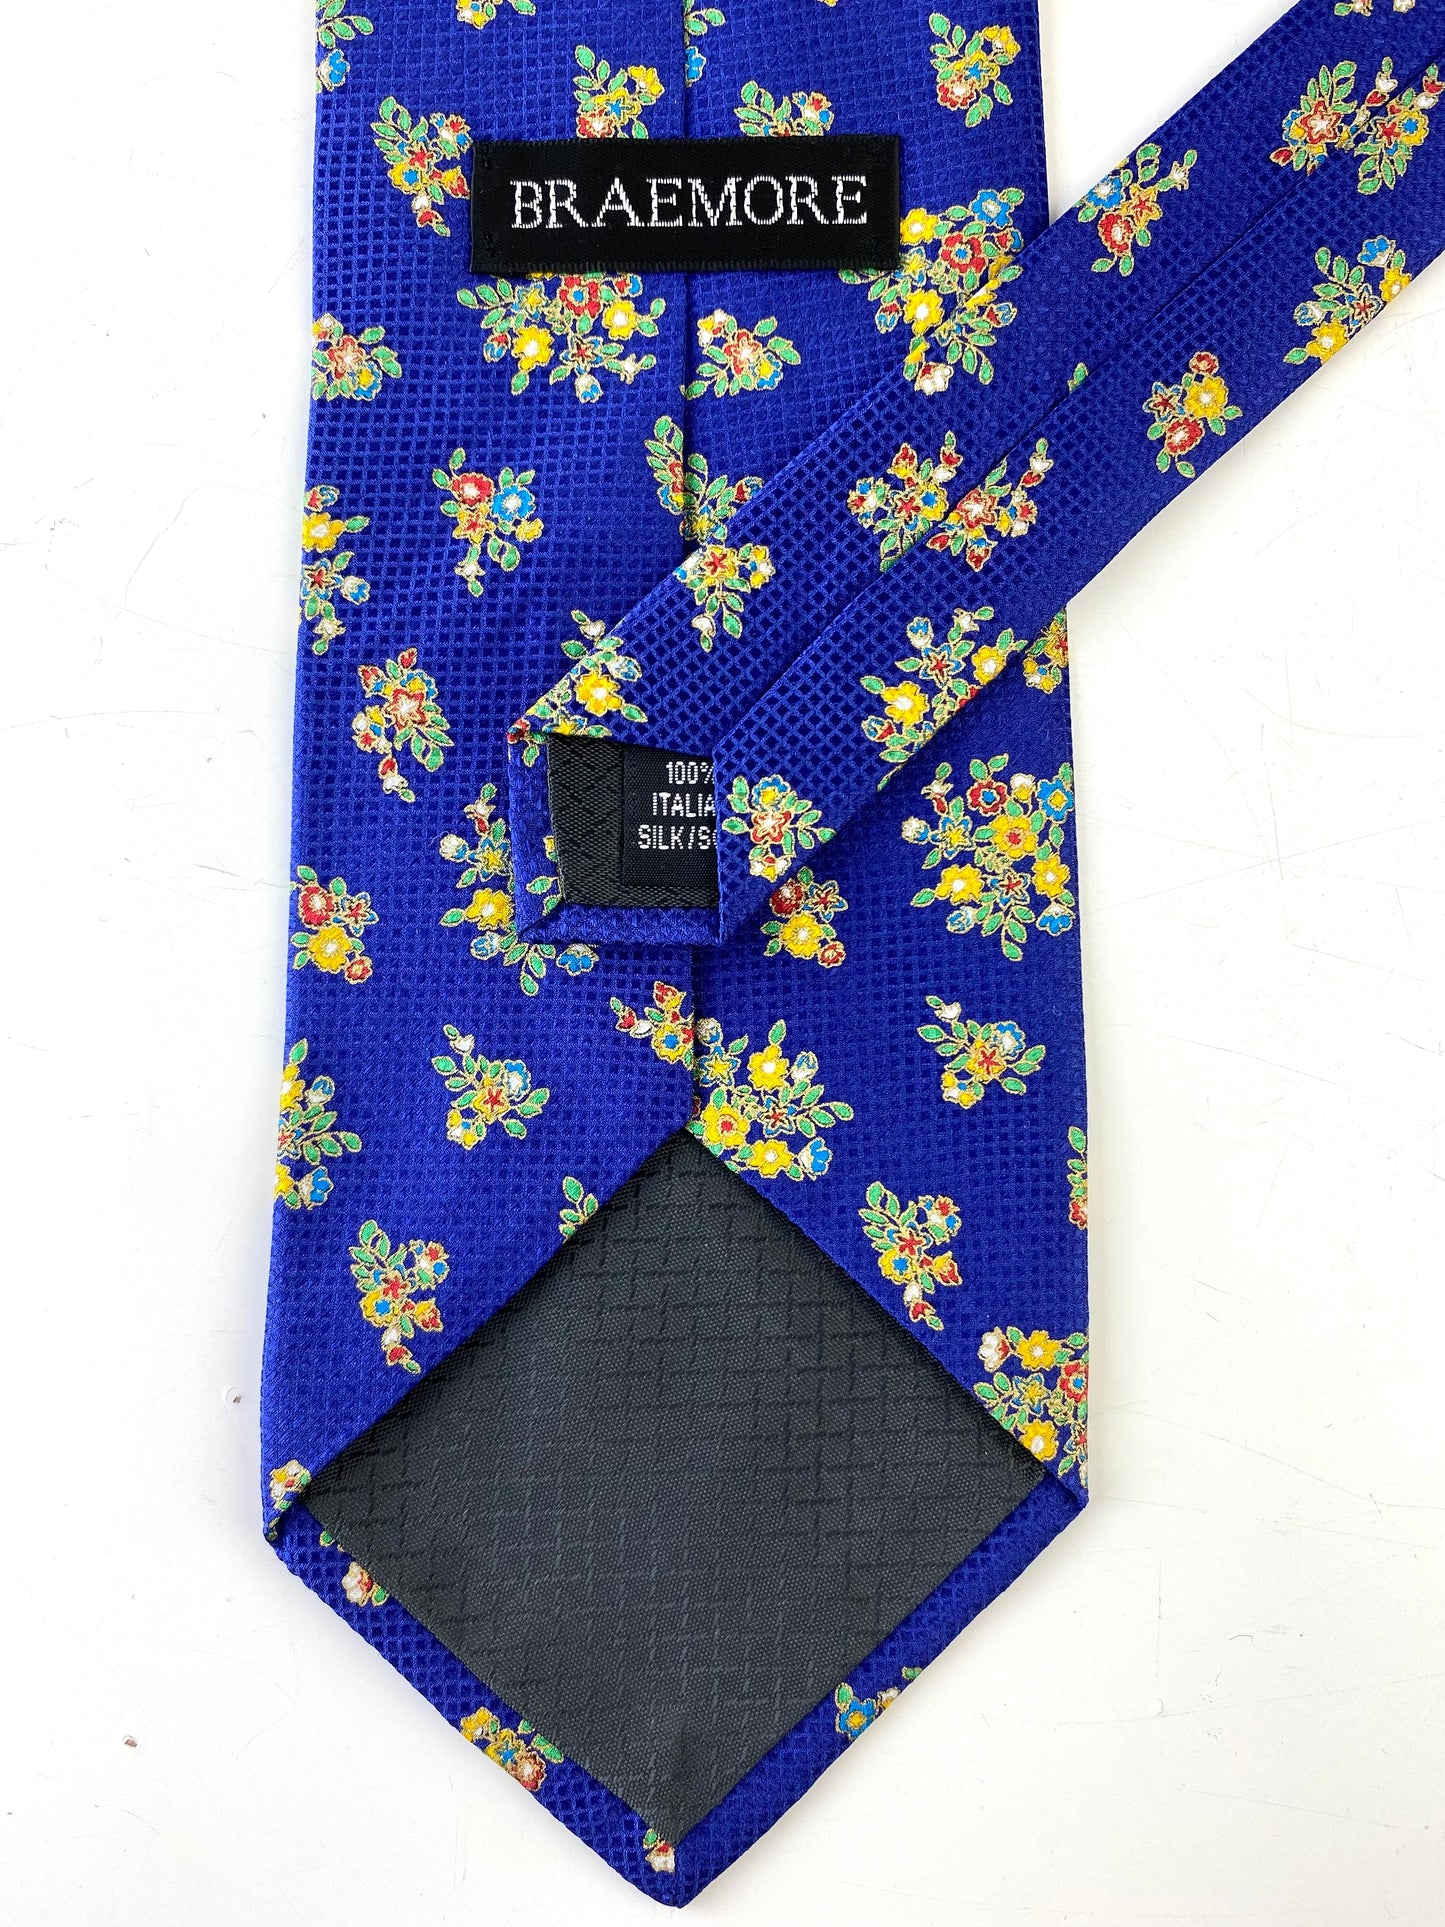 90s Deadstock Silk Necktie, Men's Vintage Blue/ Yellow Gold Floral Pattern Tie, NOS